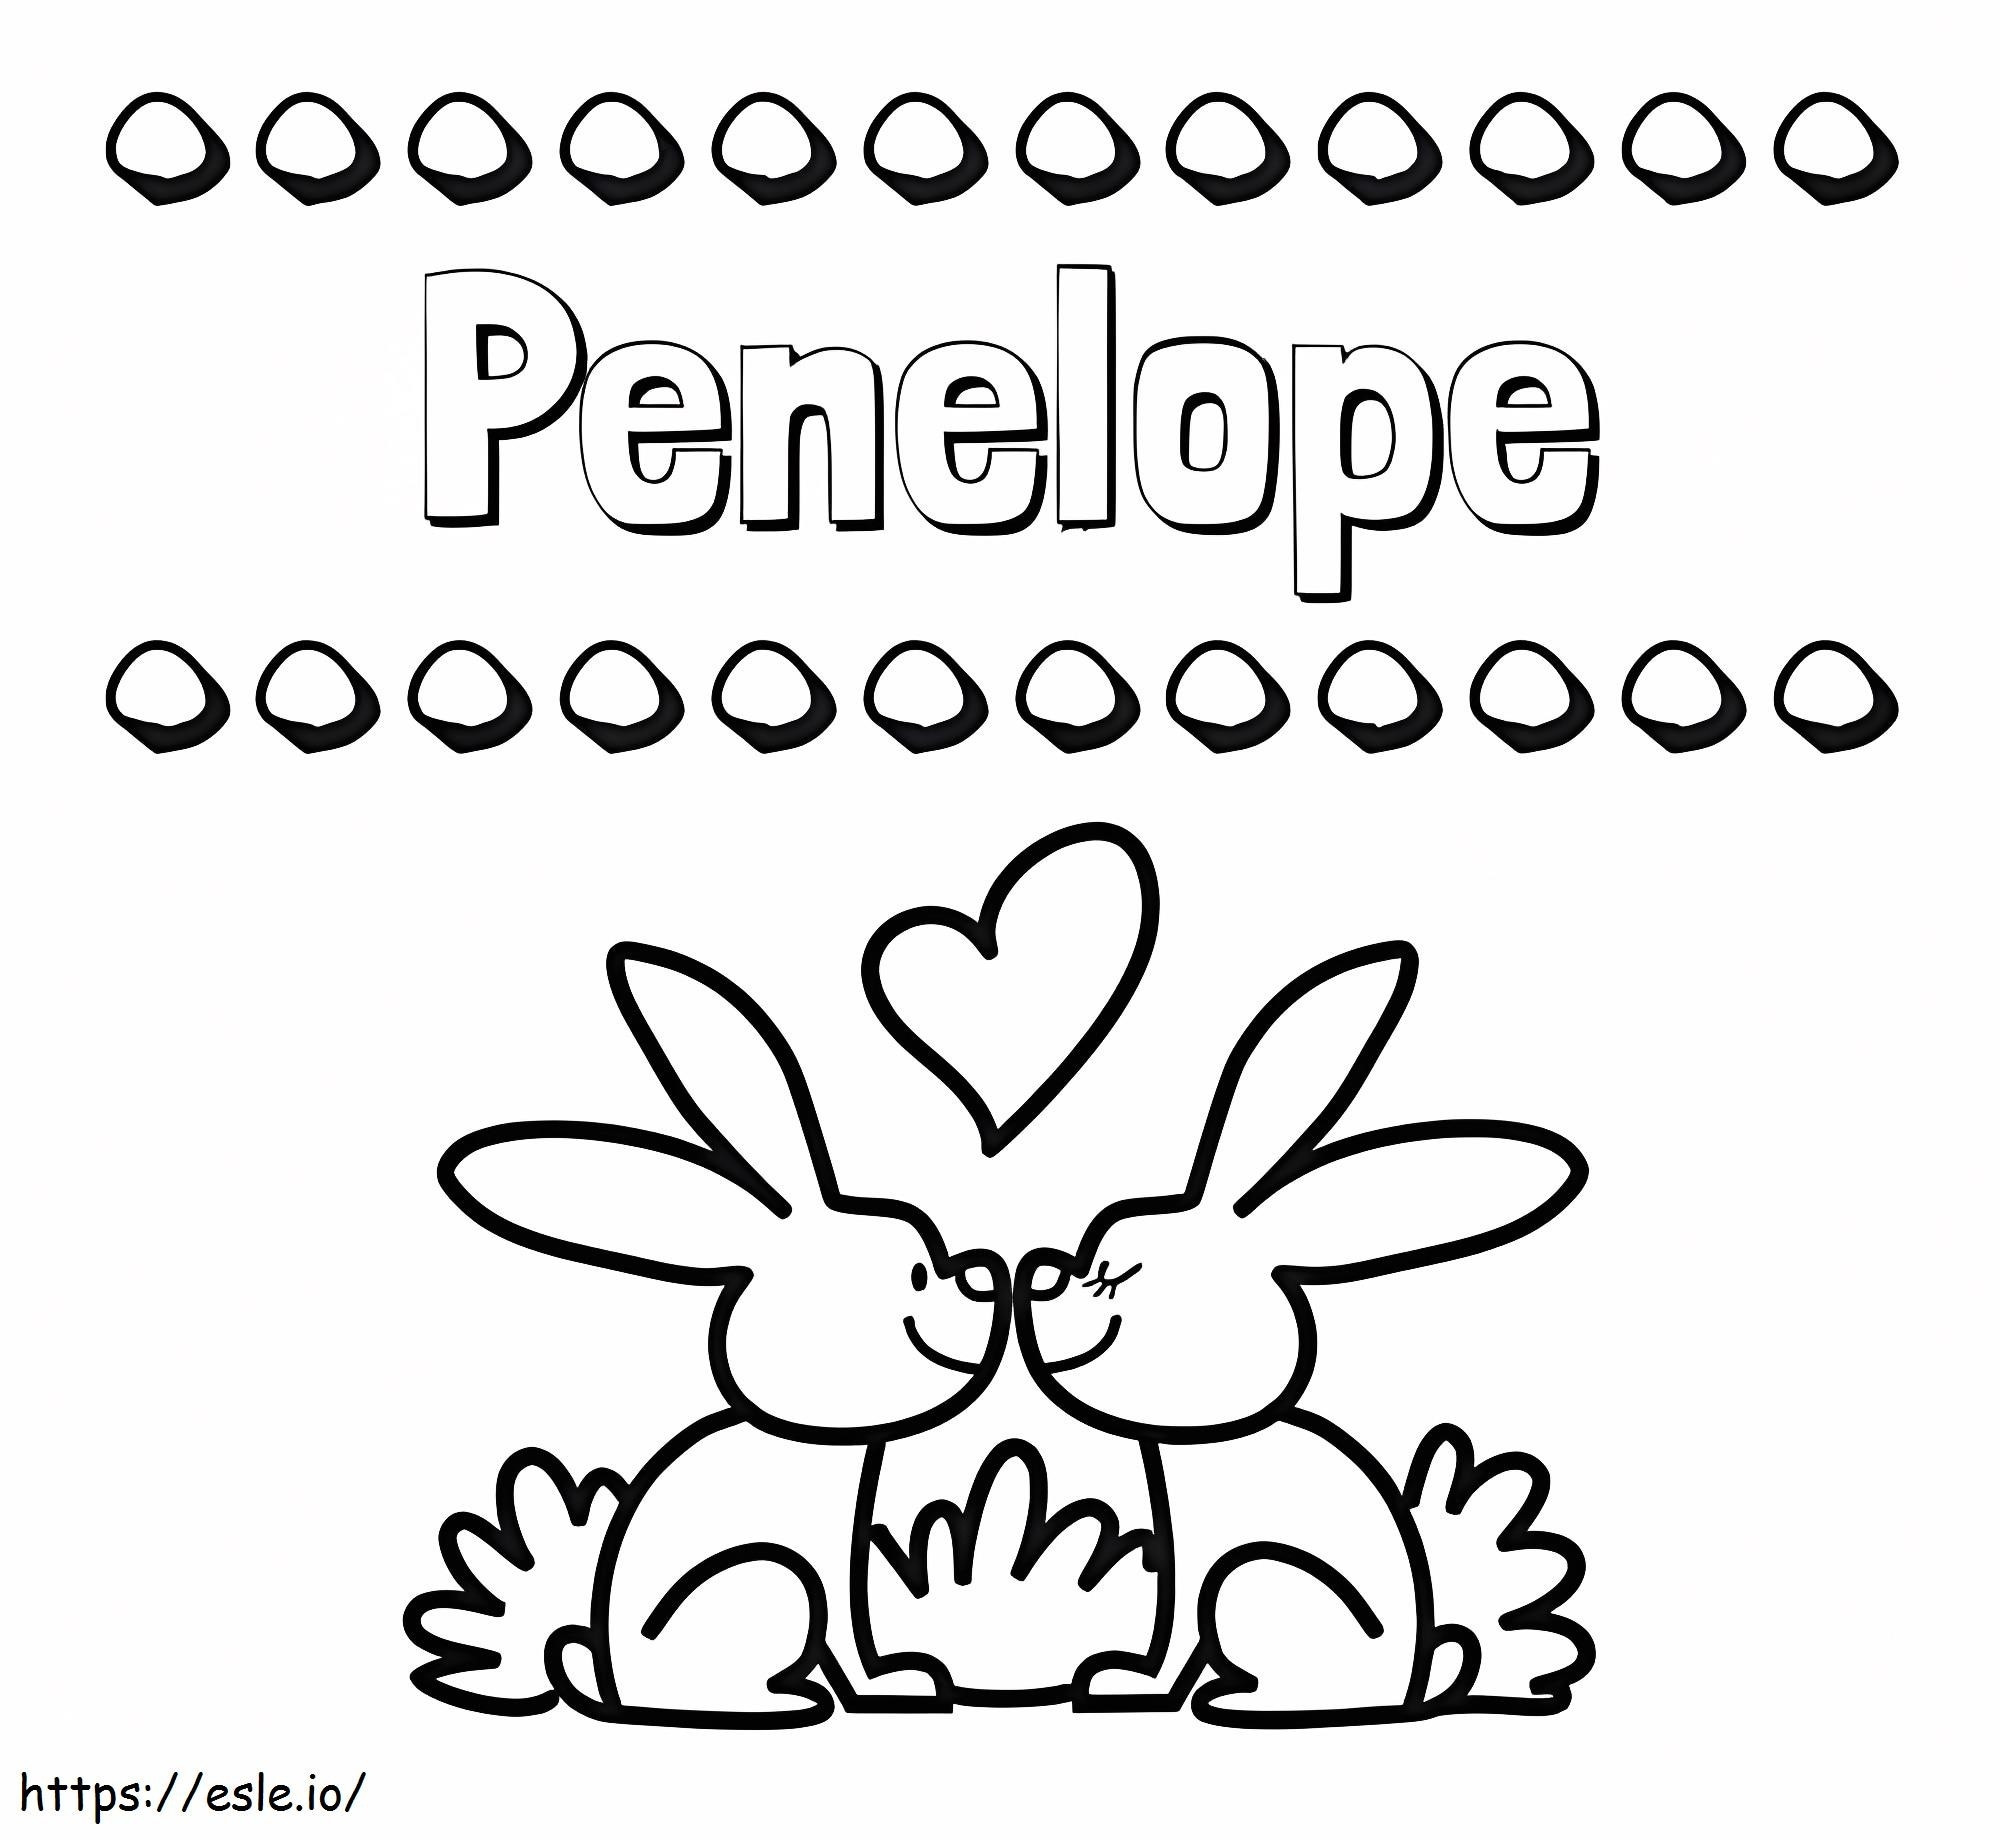 Penelope gratuit pentru a imprima de colorat